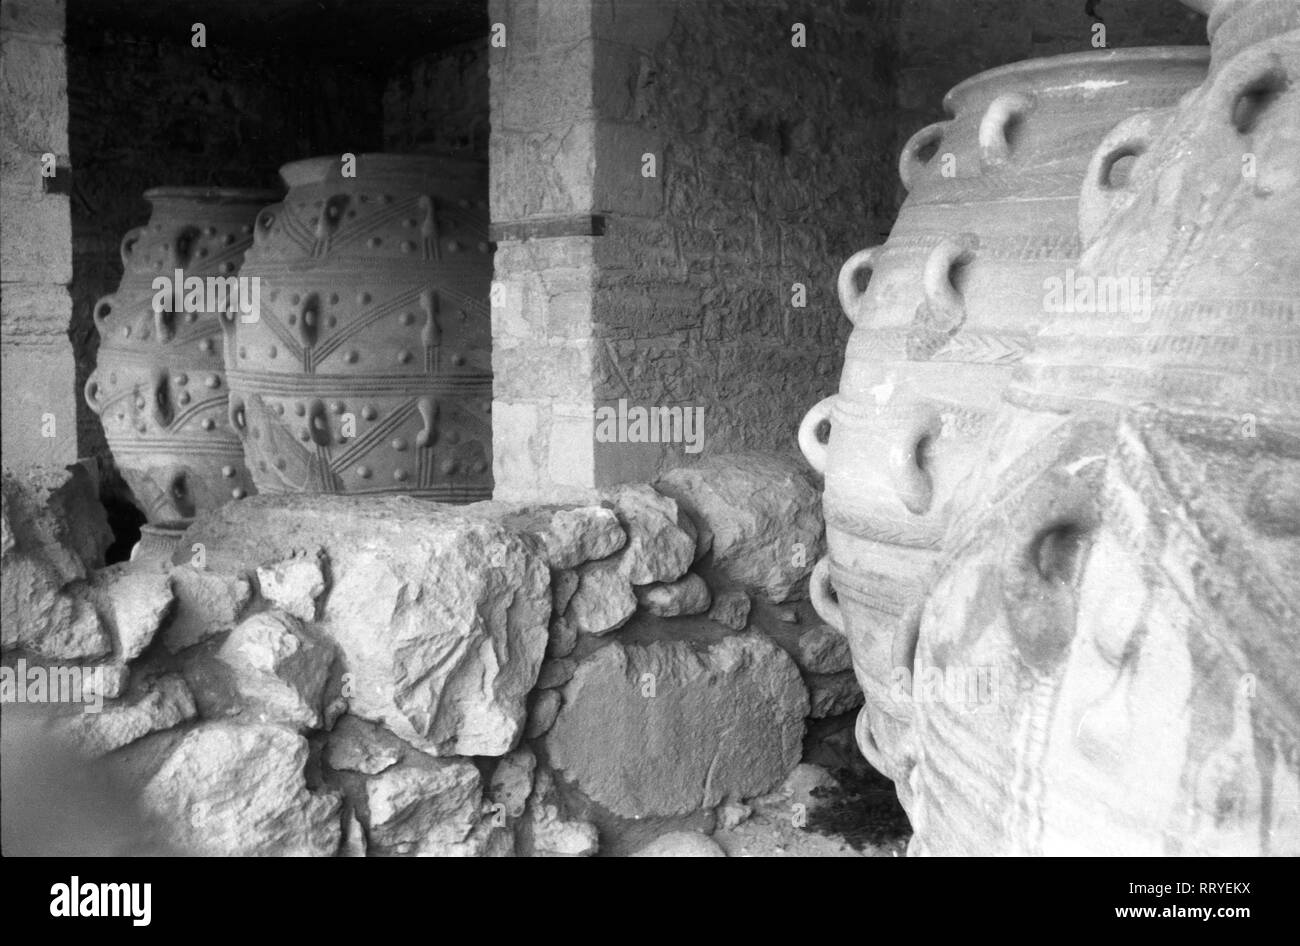 Griechenland, Greece - Amphoren in der Ausgrabungszone des Palastes von Knossos auf Kreta, Griechenland 1950er Jahre. Amphorae at the archaeological site of Knossos Palace, Crete, Greece 1950s. Stock Photo